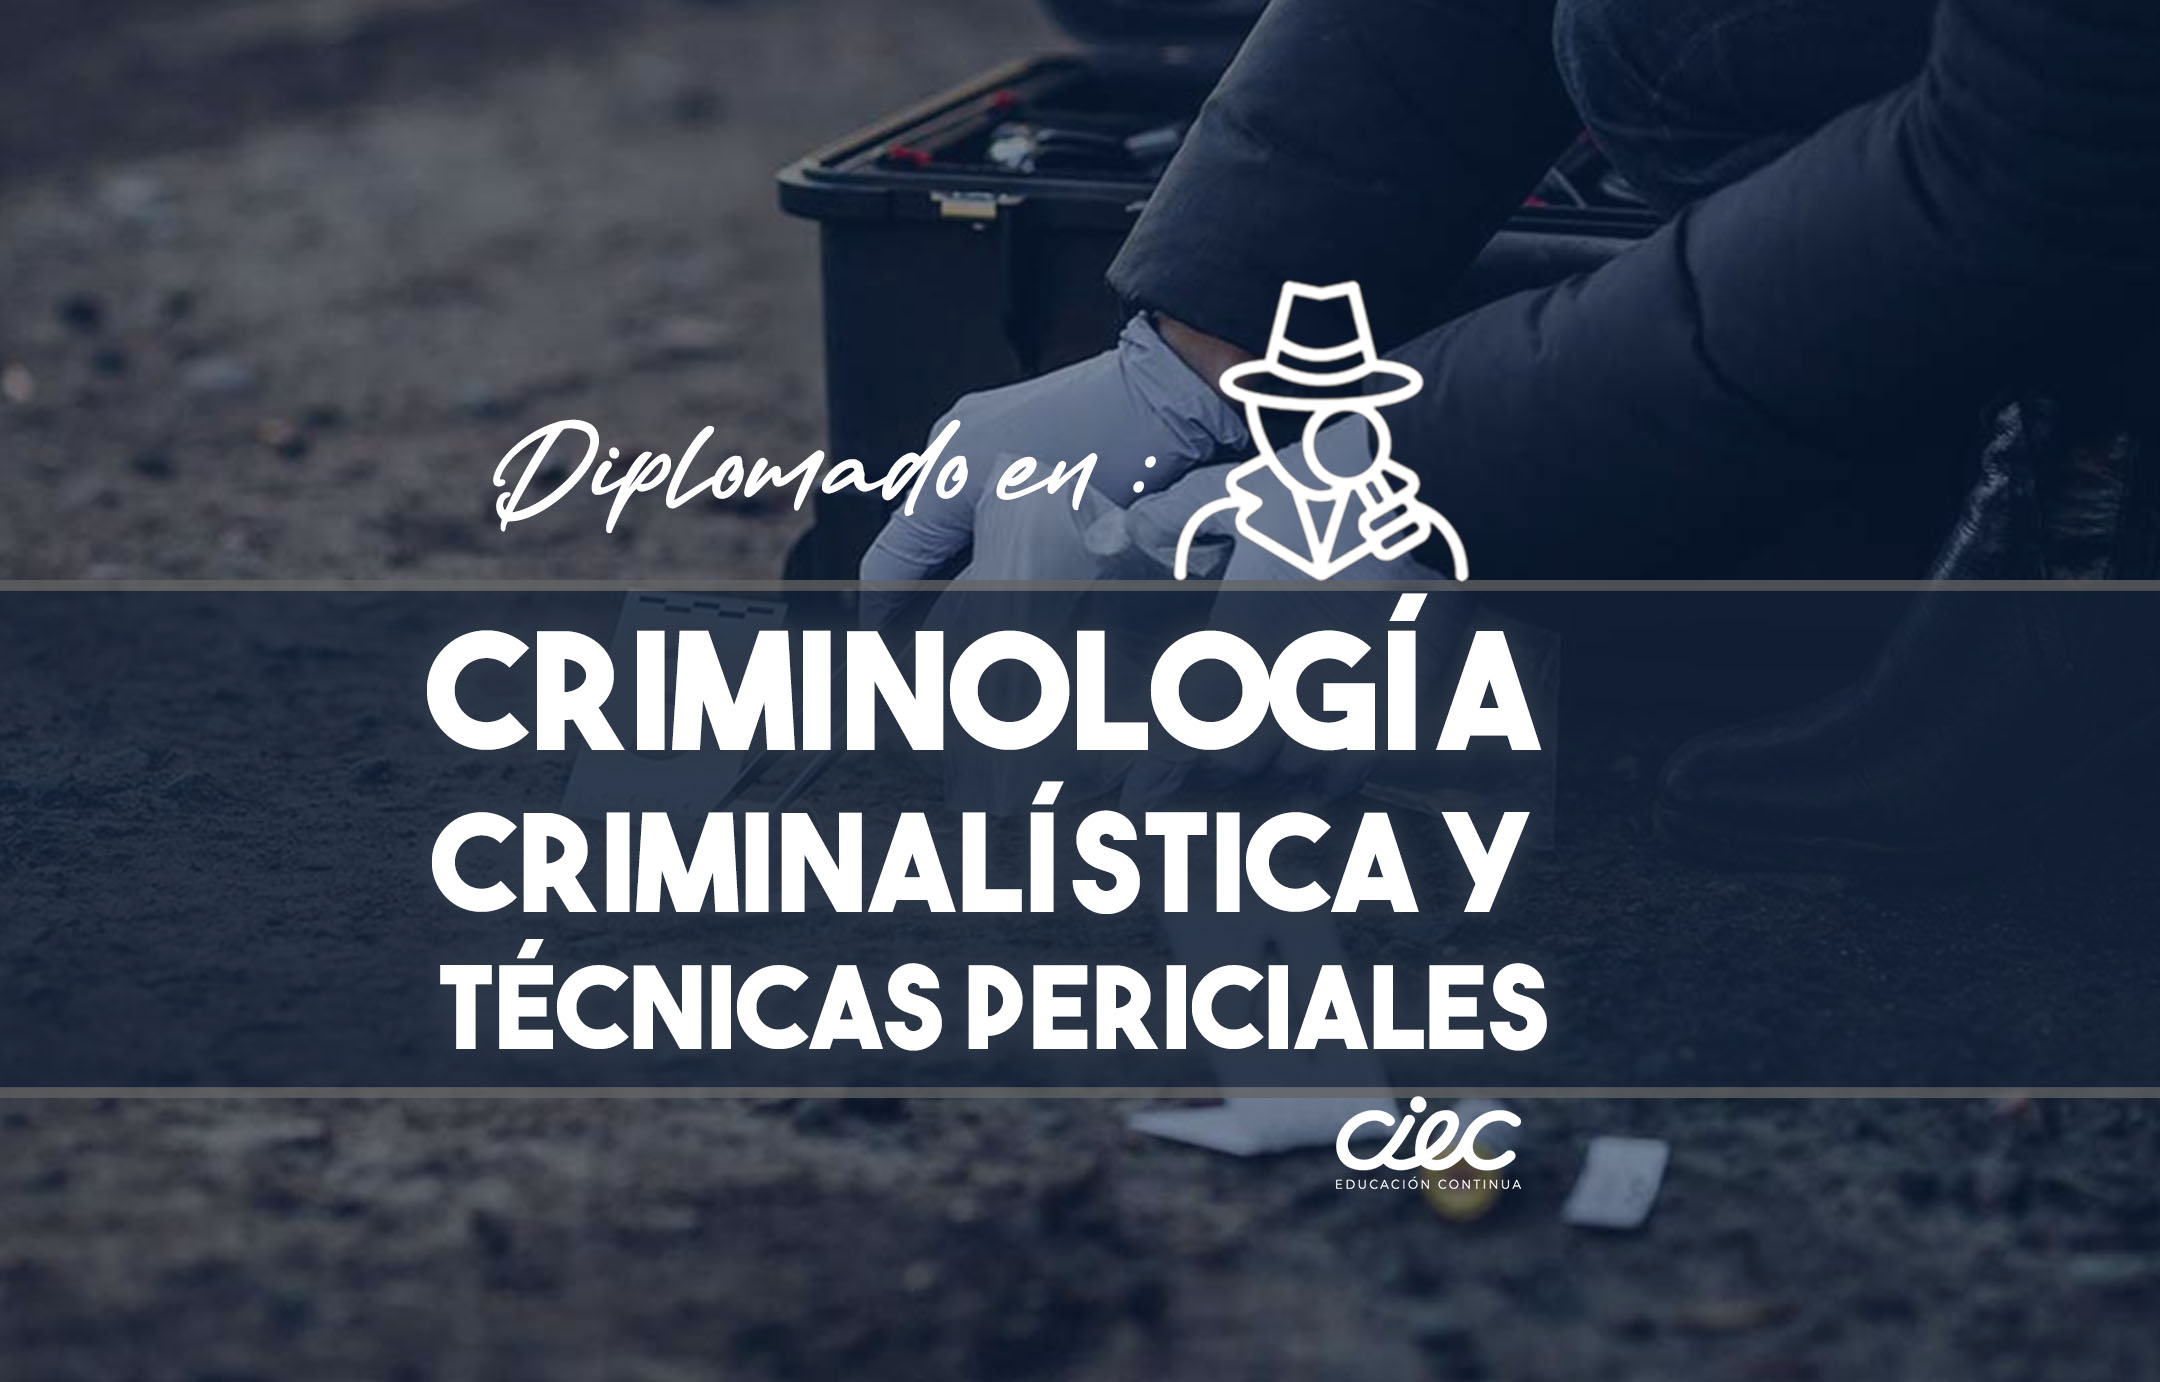 DIPLOMADO EN CRIMINOLOGIA, CRIMINALISTICA Y TECNICAS PERICIALES